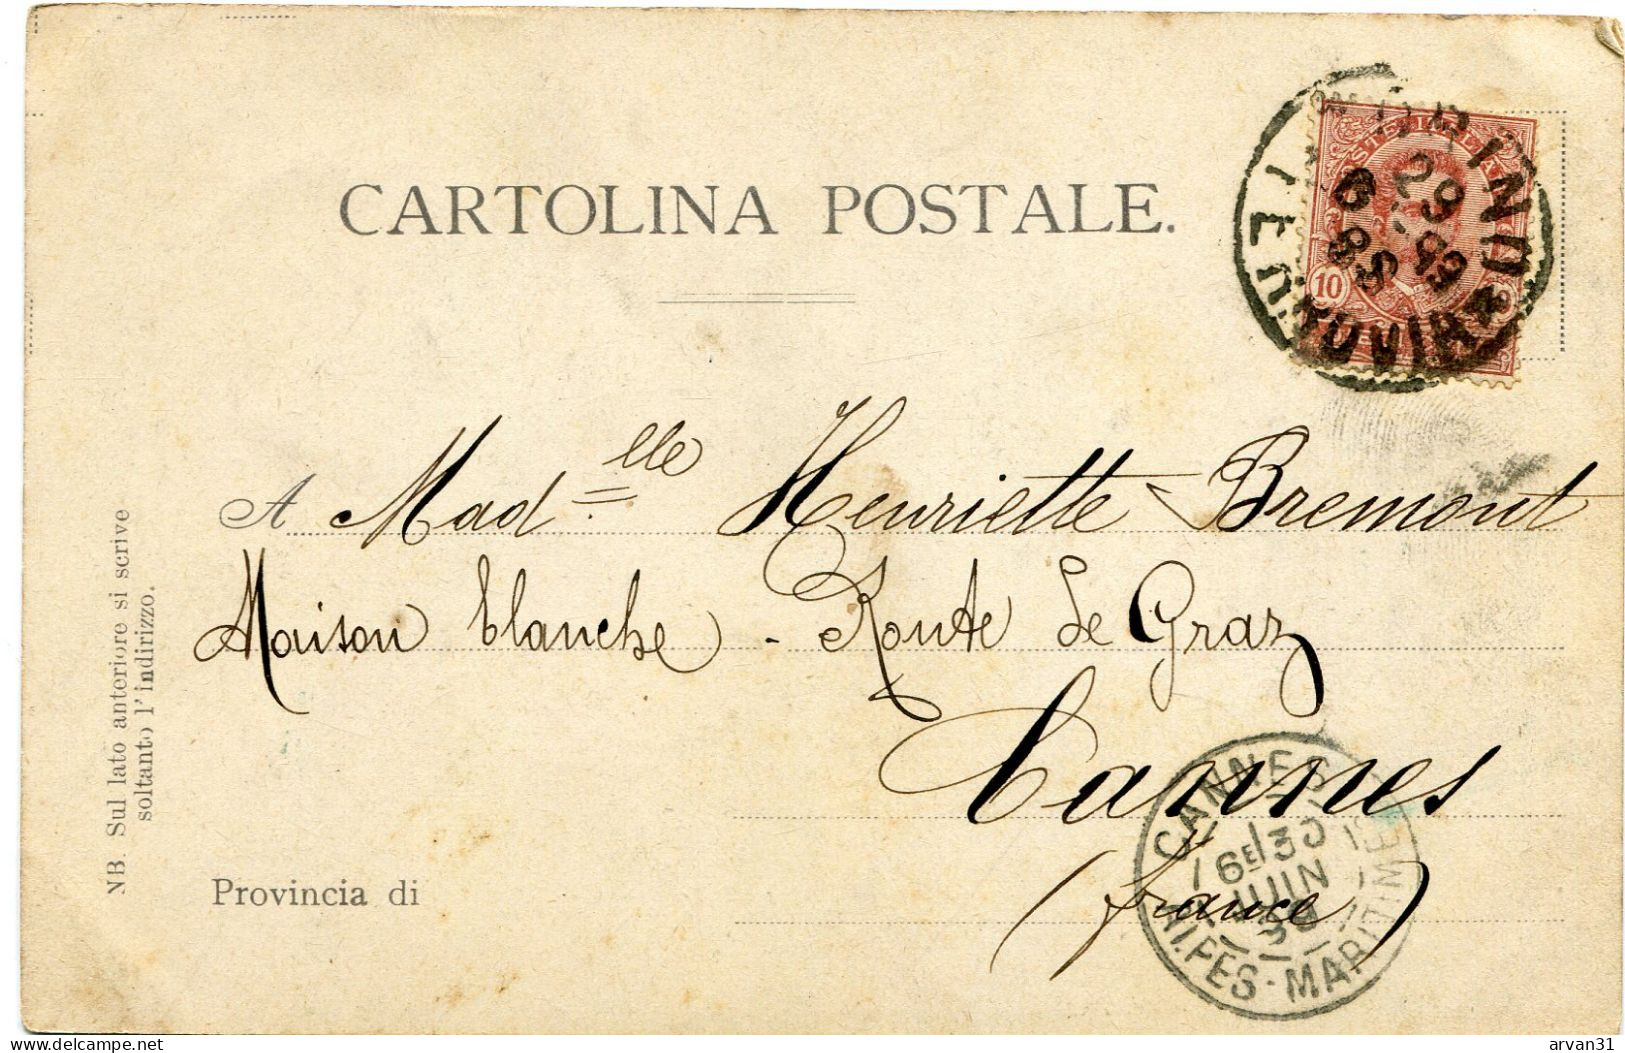 TORINO - RICORDO Di SUPERGA 1 - CARTOLINA PRECURSORE RARO Del 1899 - POSSIBILITÀ DI SCONTO E SPEDIZIONE GRATUITA - - Mehransichten, Panoramakarten